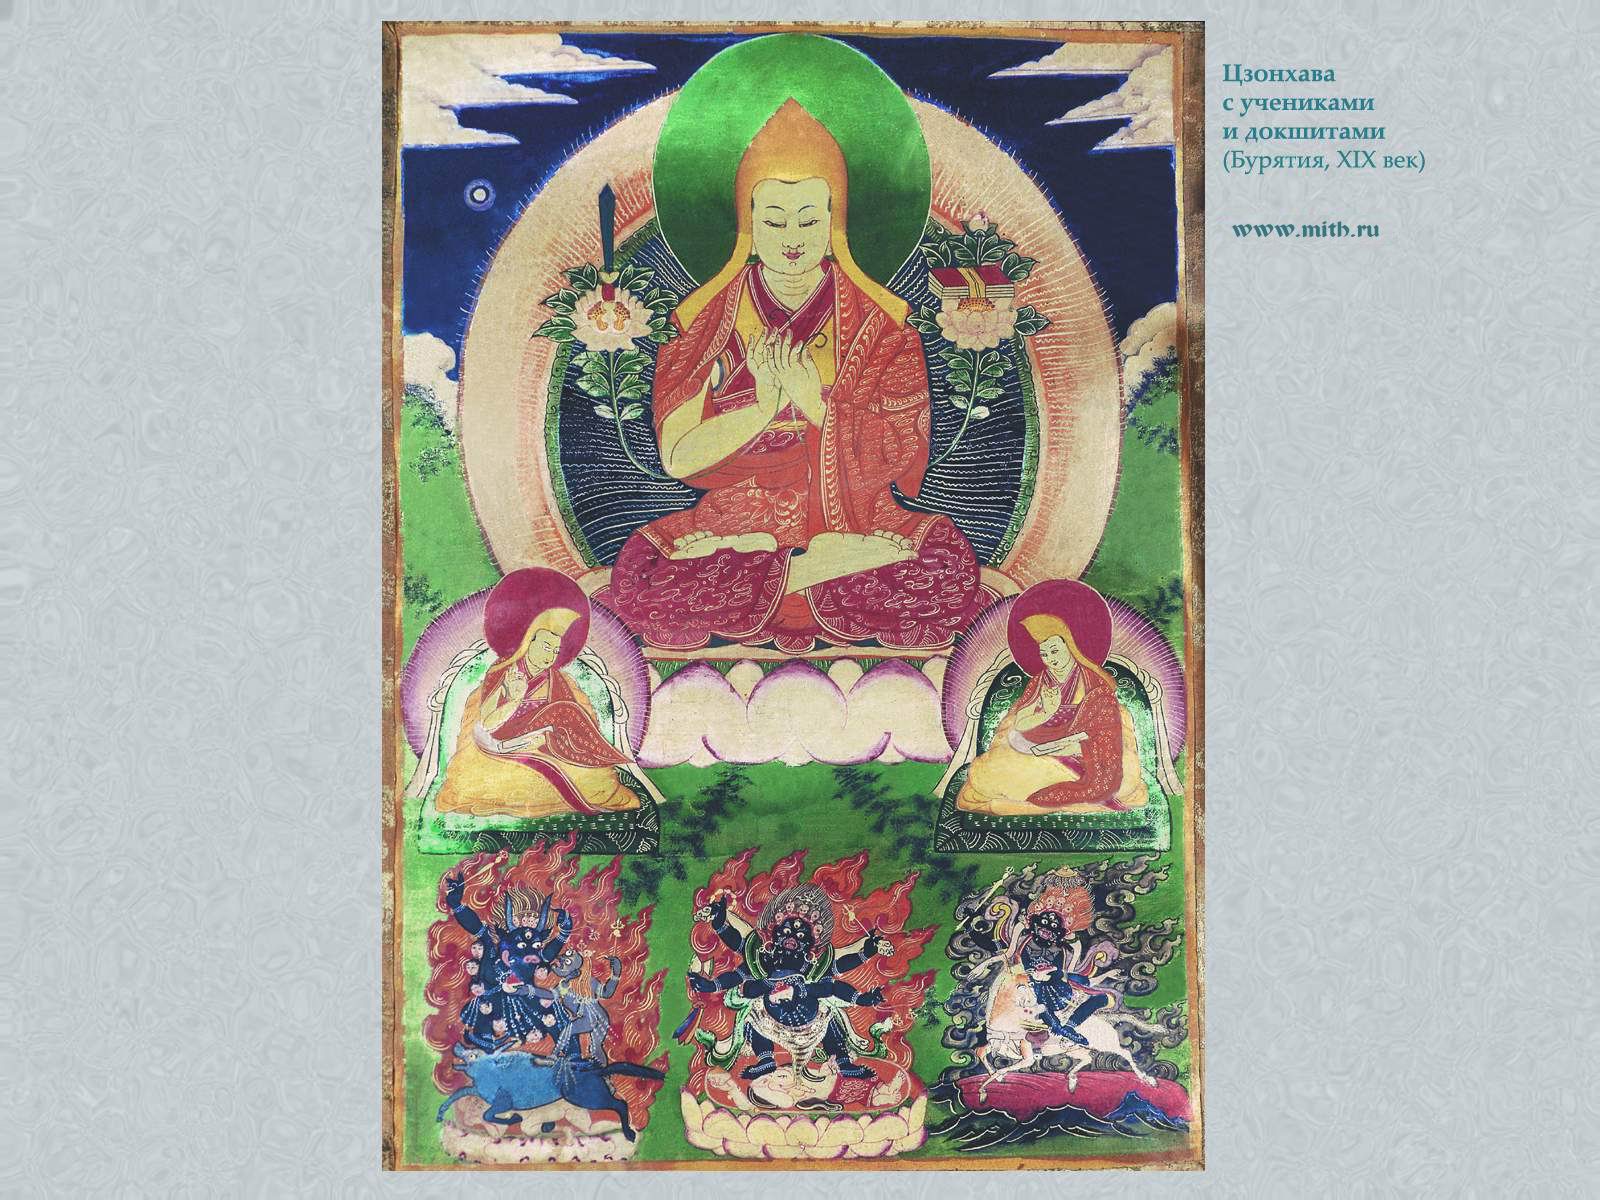 Цзонхава,
Лхамо, Махакала, Яма и Ями

перейти к книге 'Тибетская живопись'